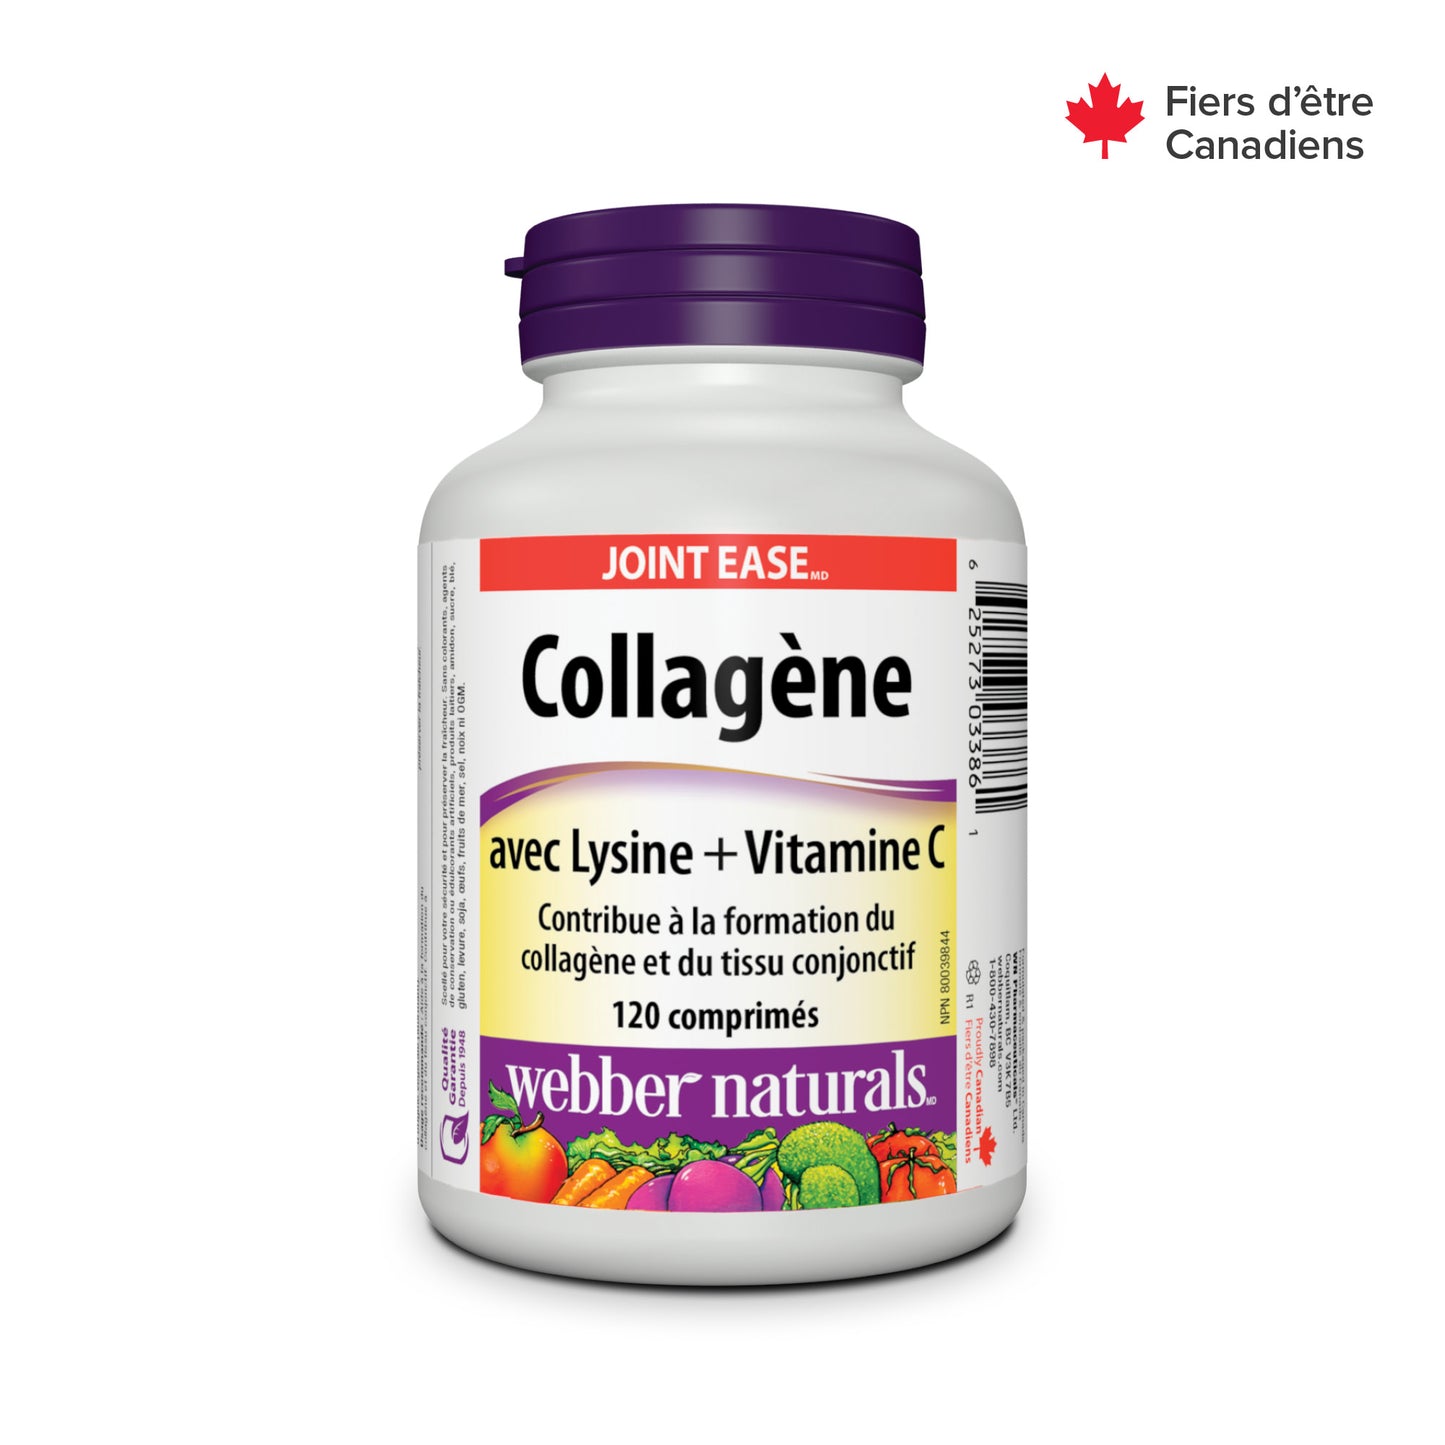 Collagen with Lysine + Vitamin C for Webber Naturals|v|hi-res|WN3386